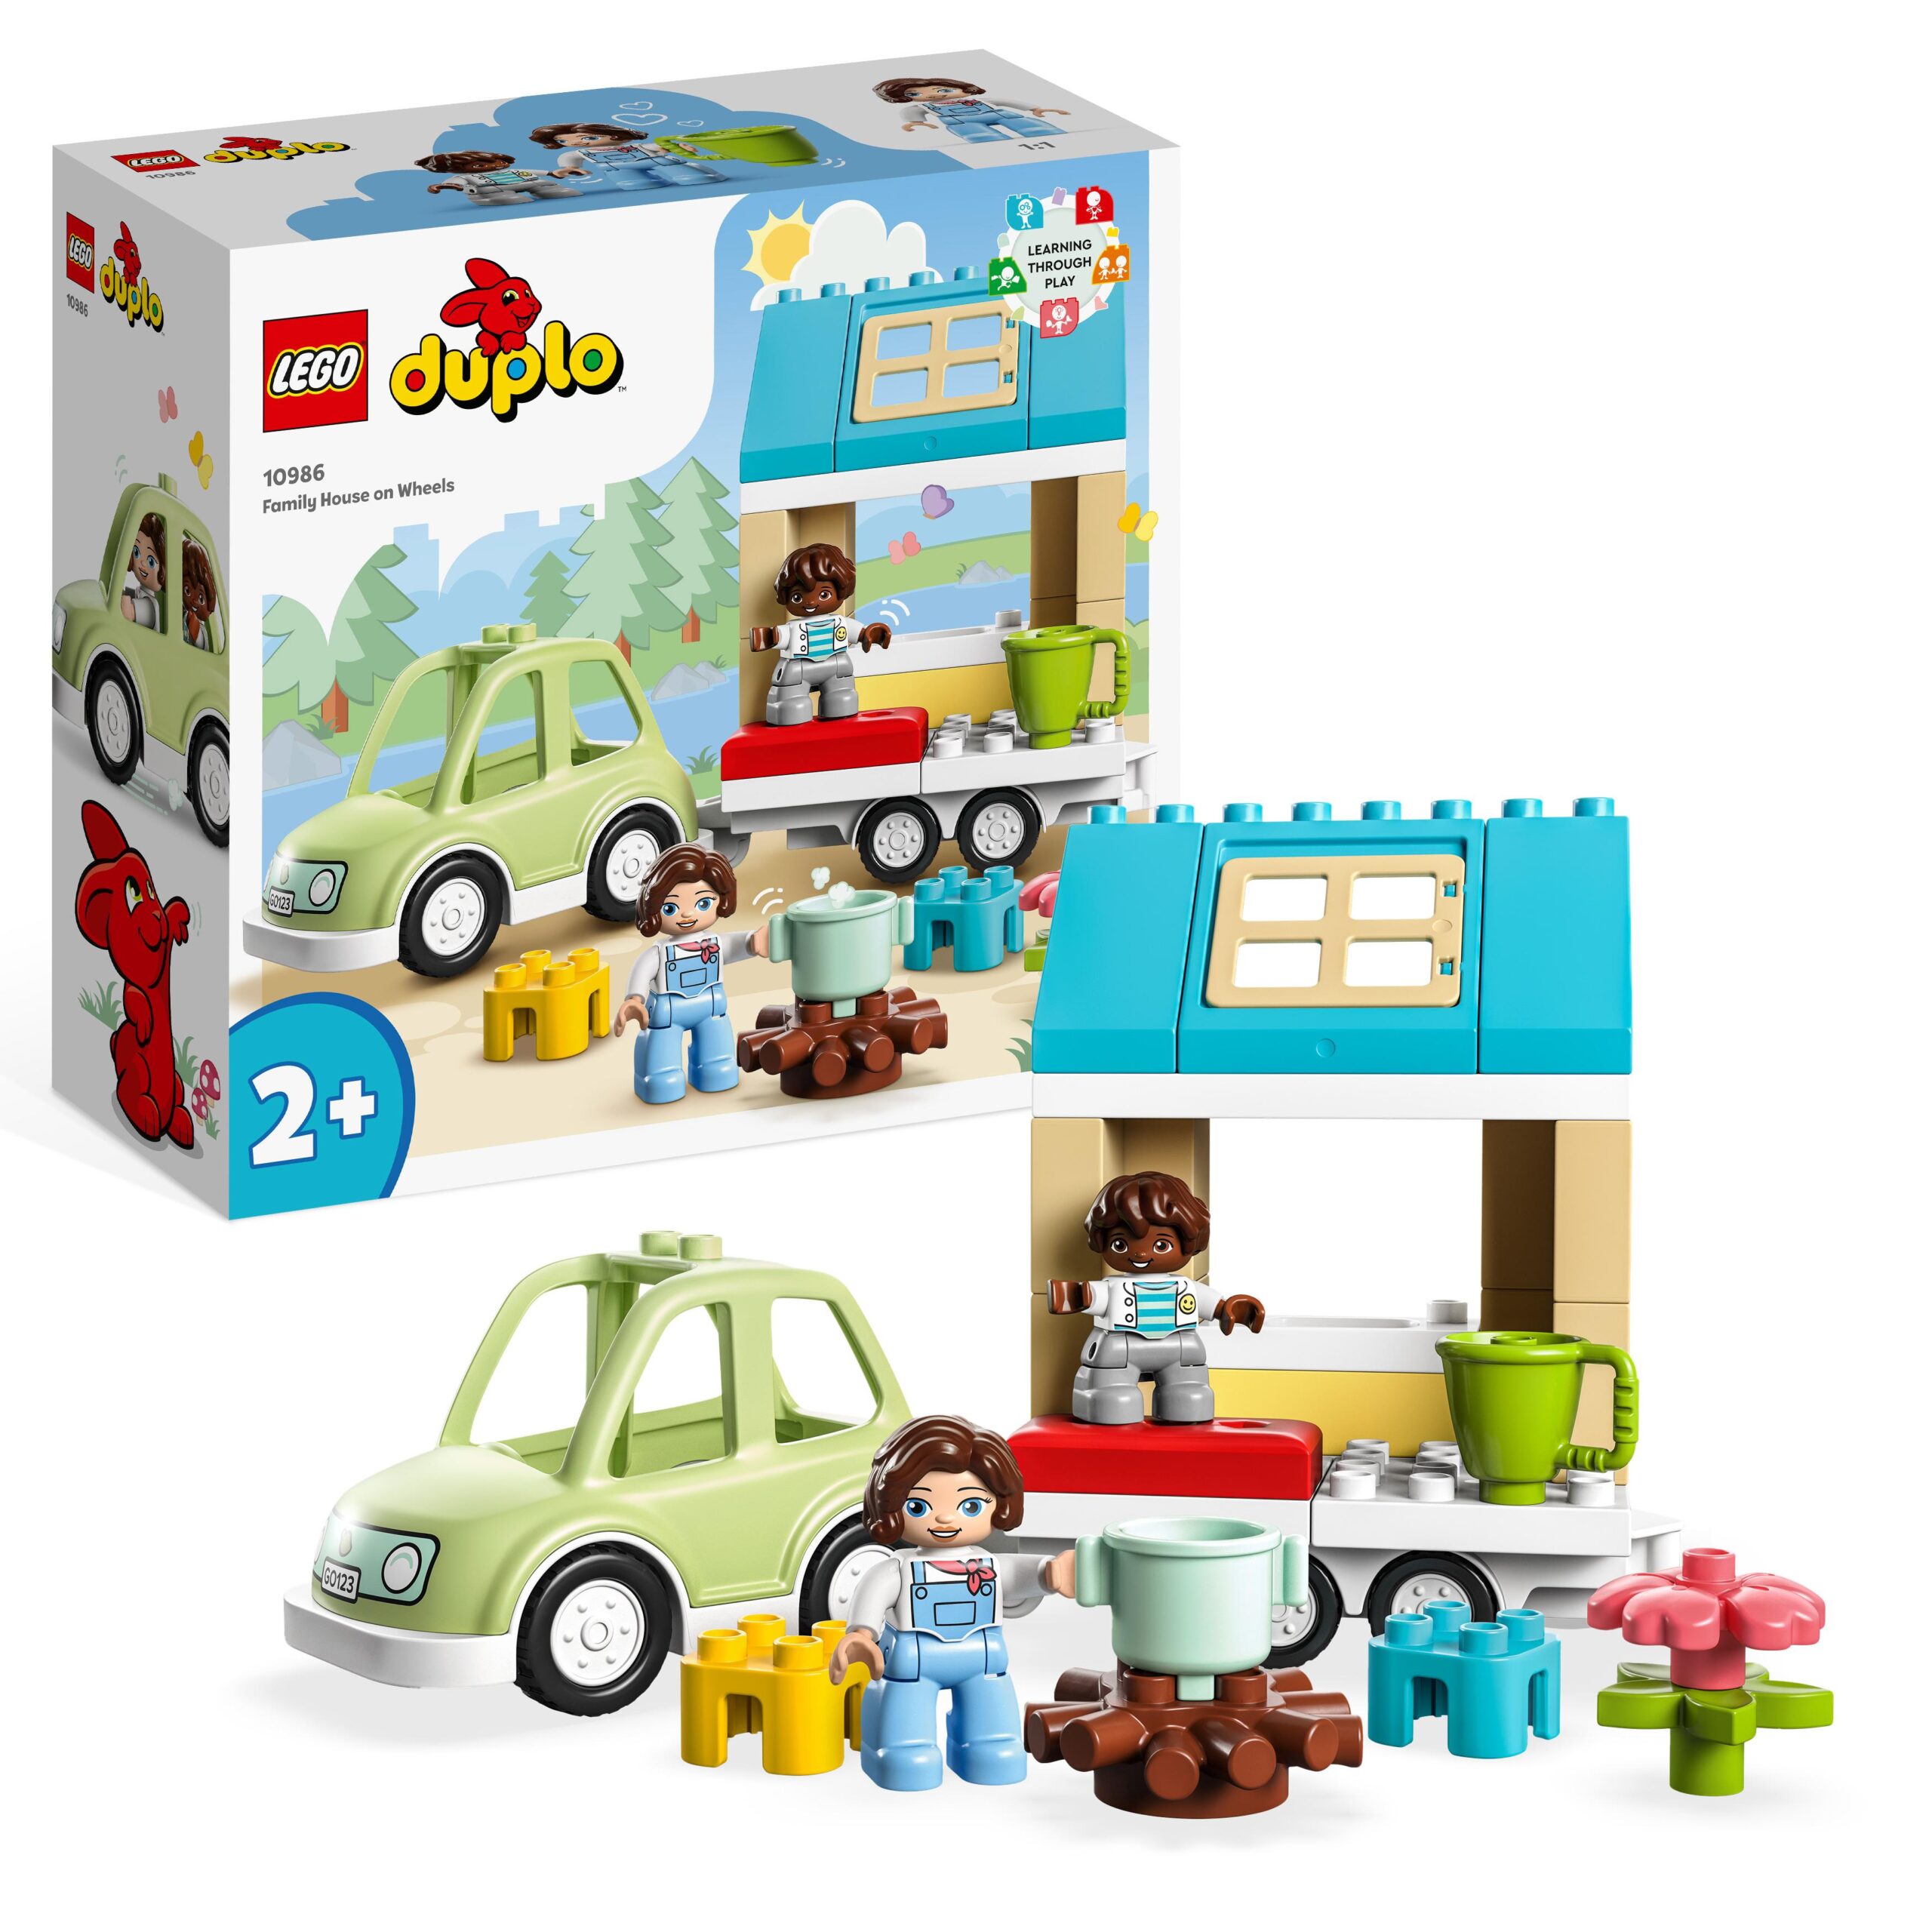 Lego duplo town 10986 casa su ruote, set da campeggio con mattoncini grandi, macchina giocattolo per bambini dai 2 anni - LEGO DUPLO